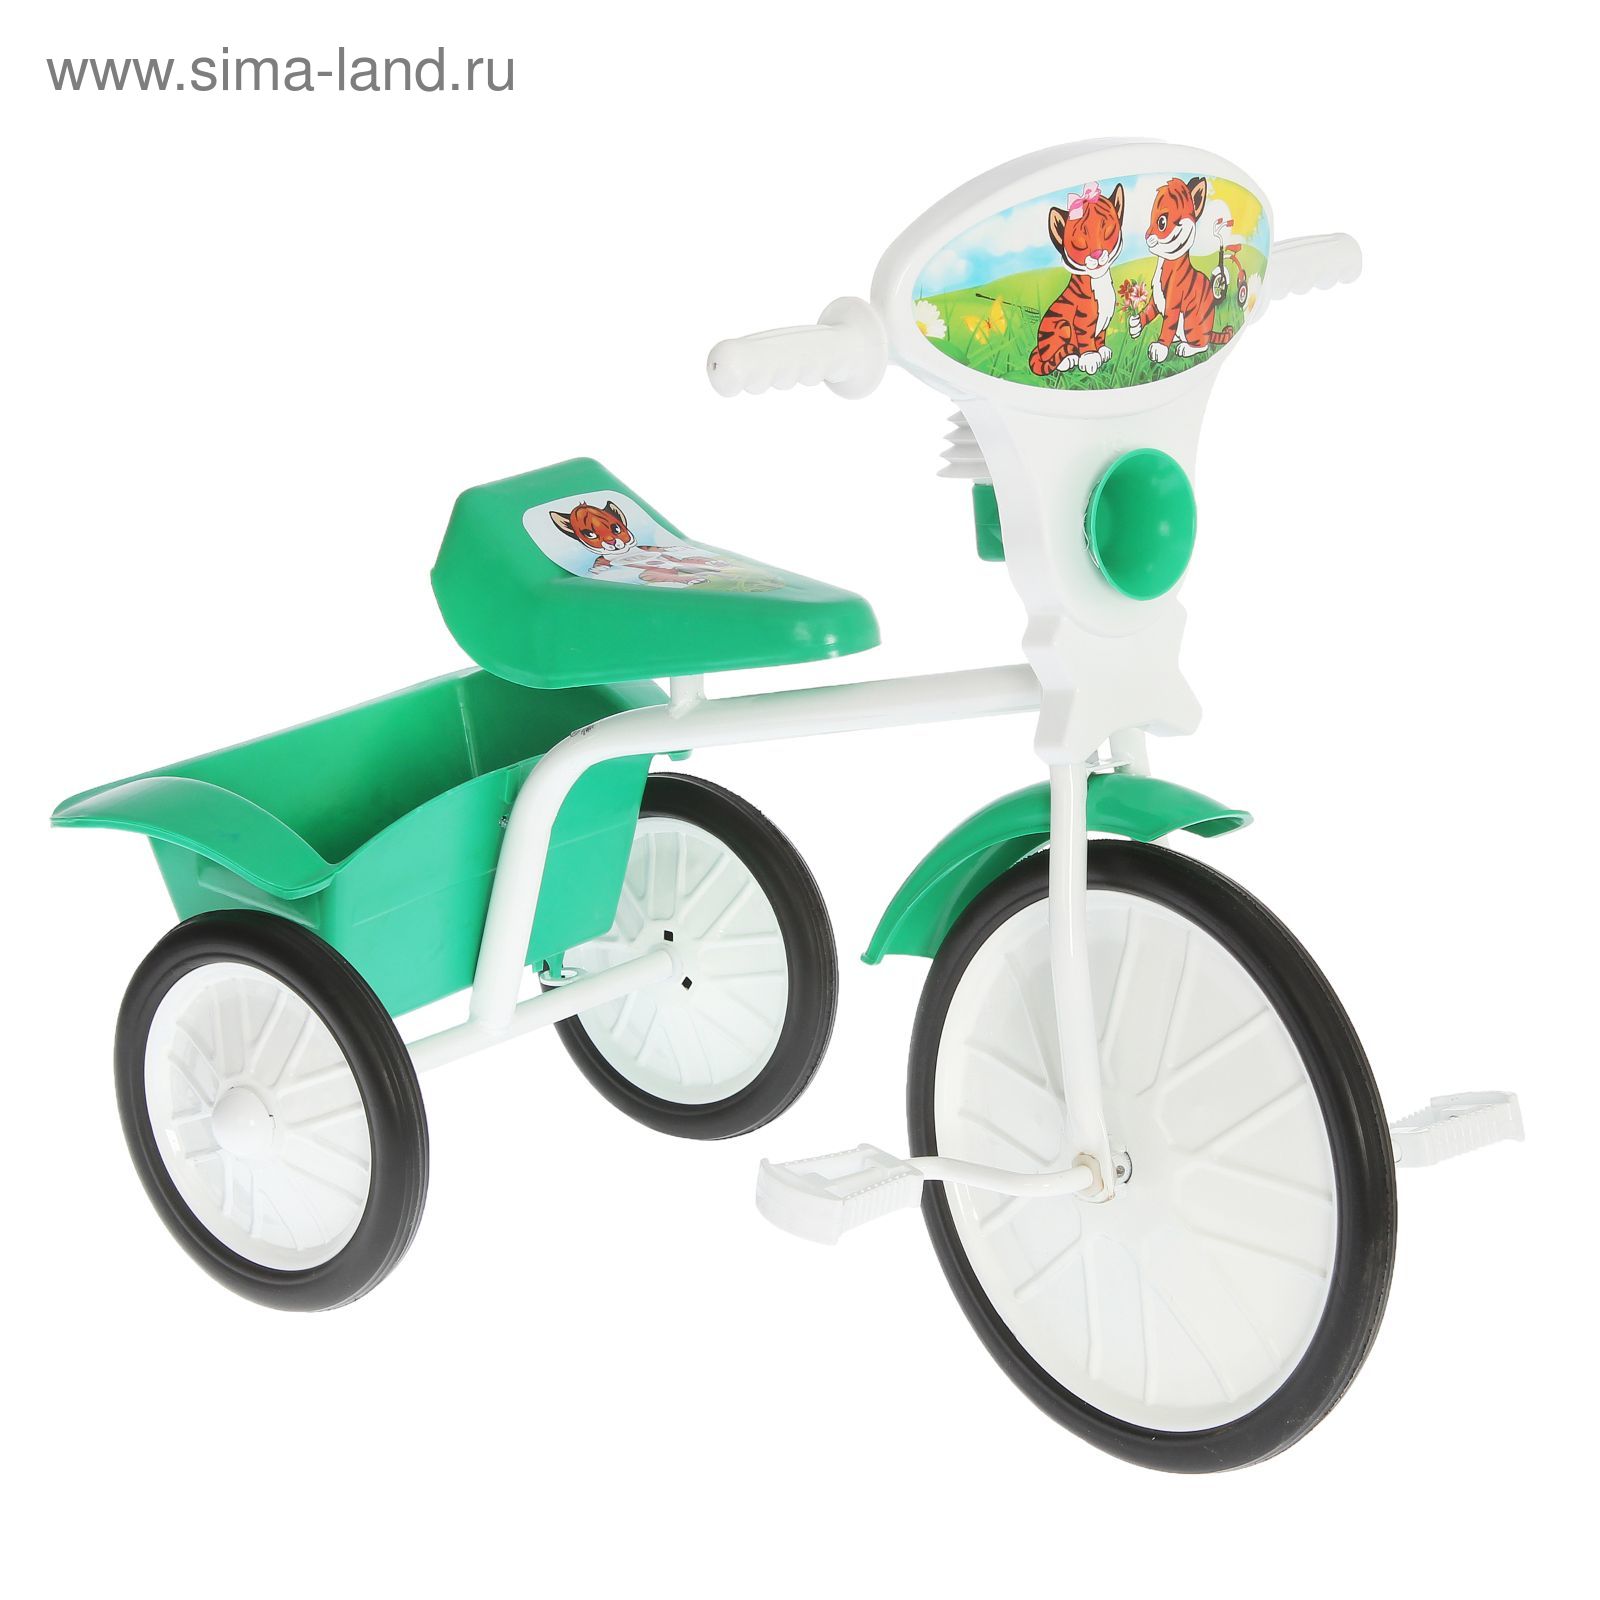 Велосипед трехколесный  "Малыш"  05, цвет зеленый, фасовка: 2шт.